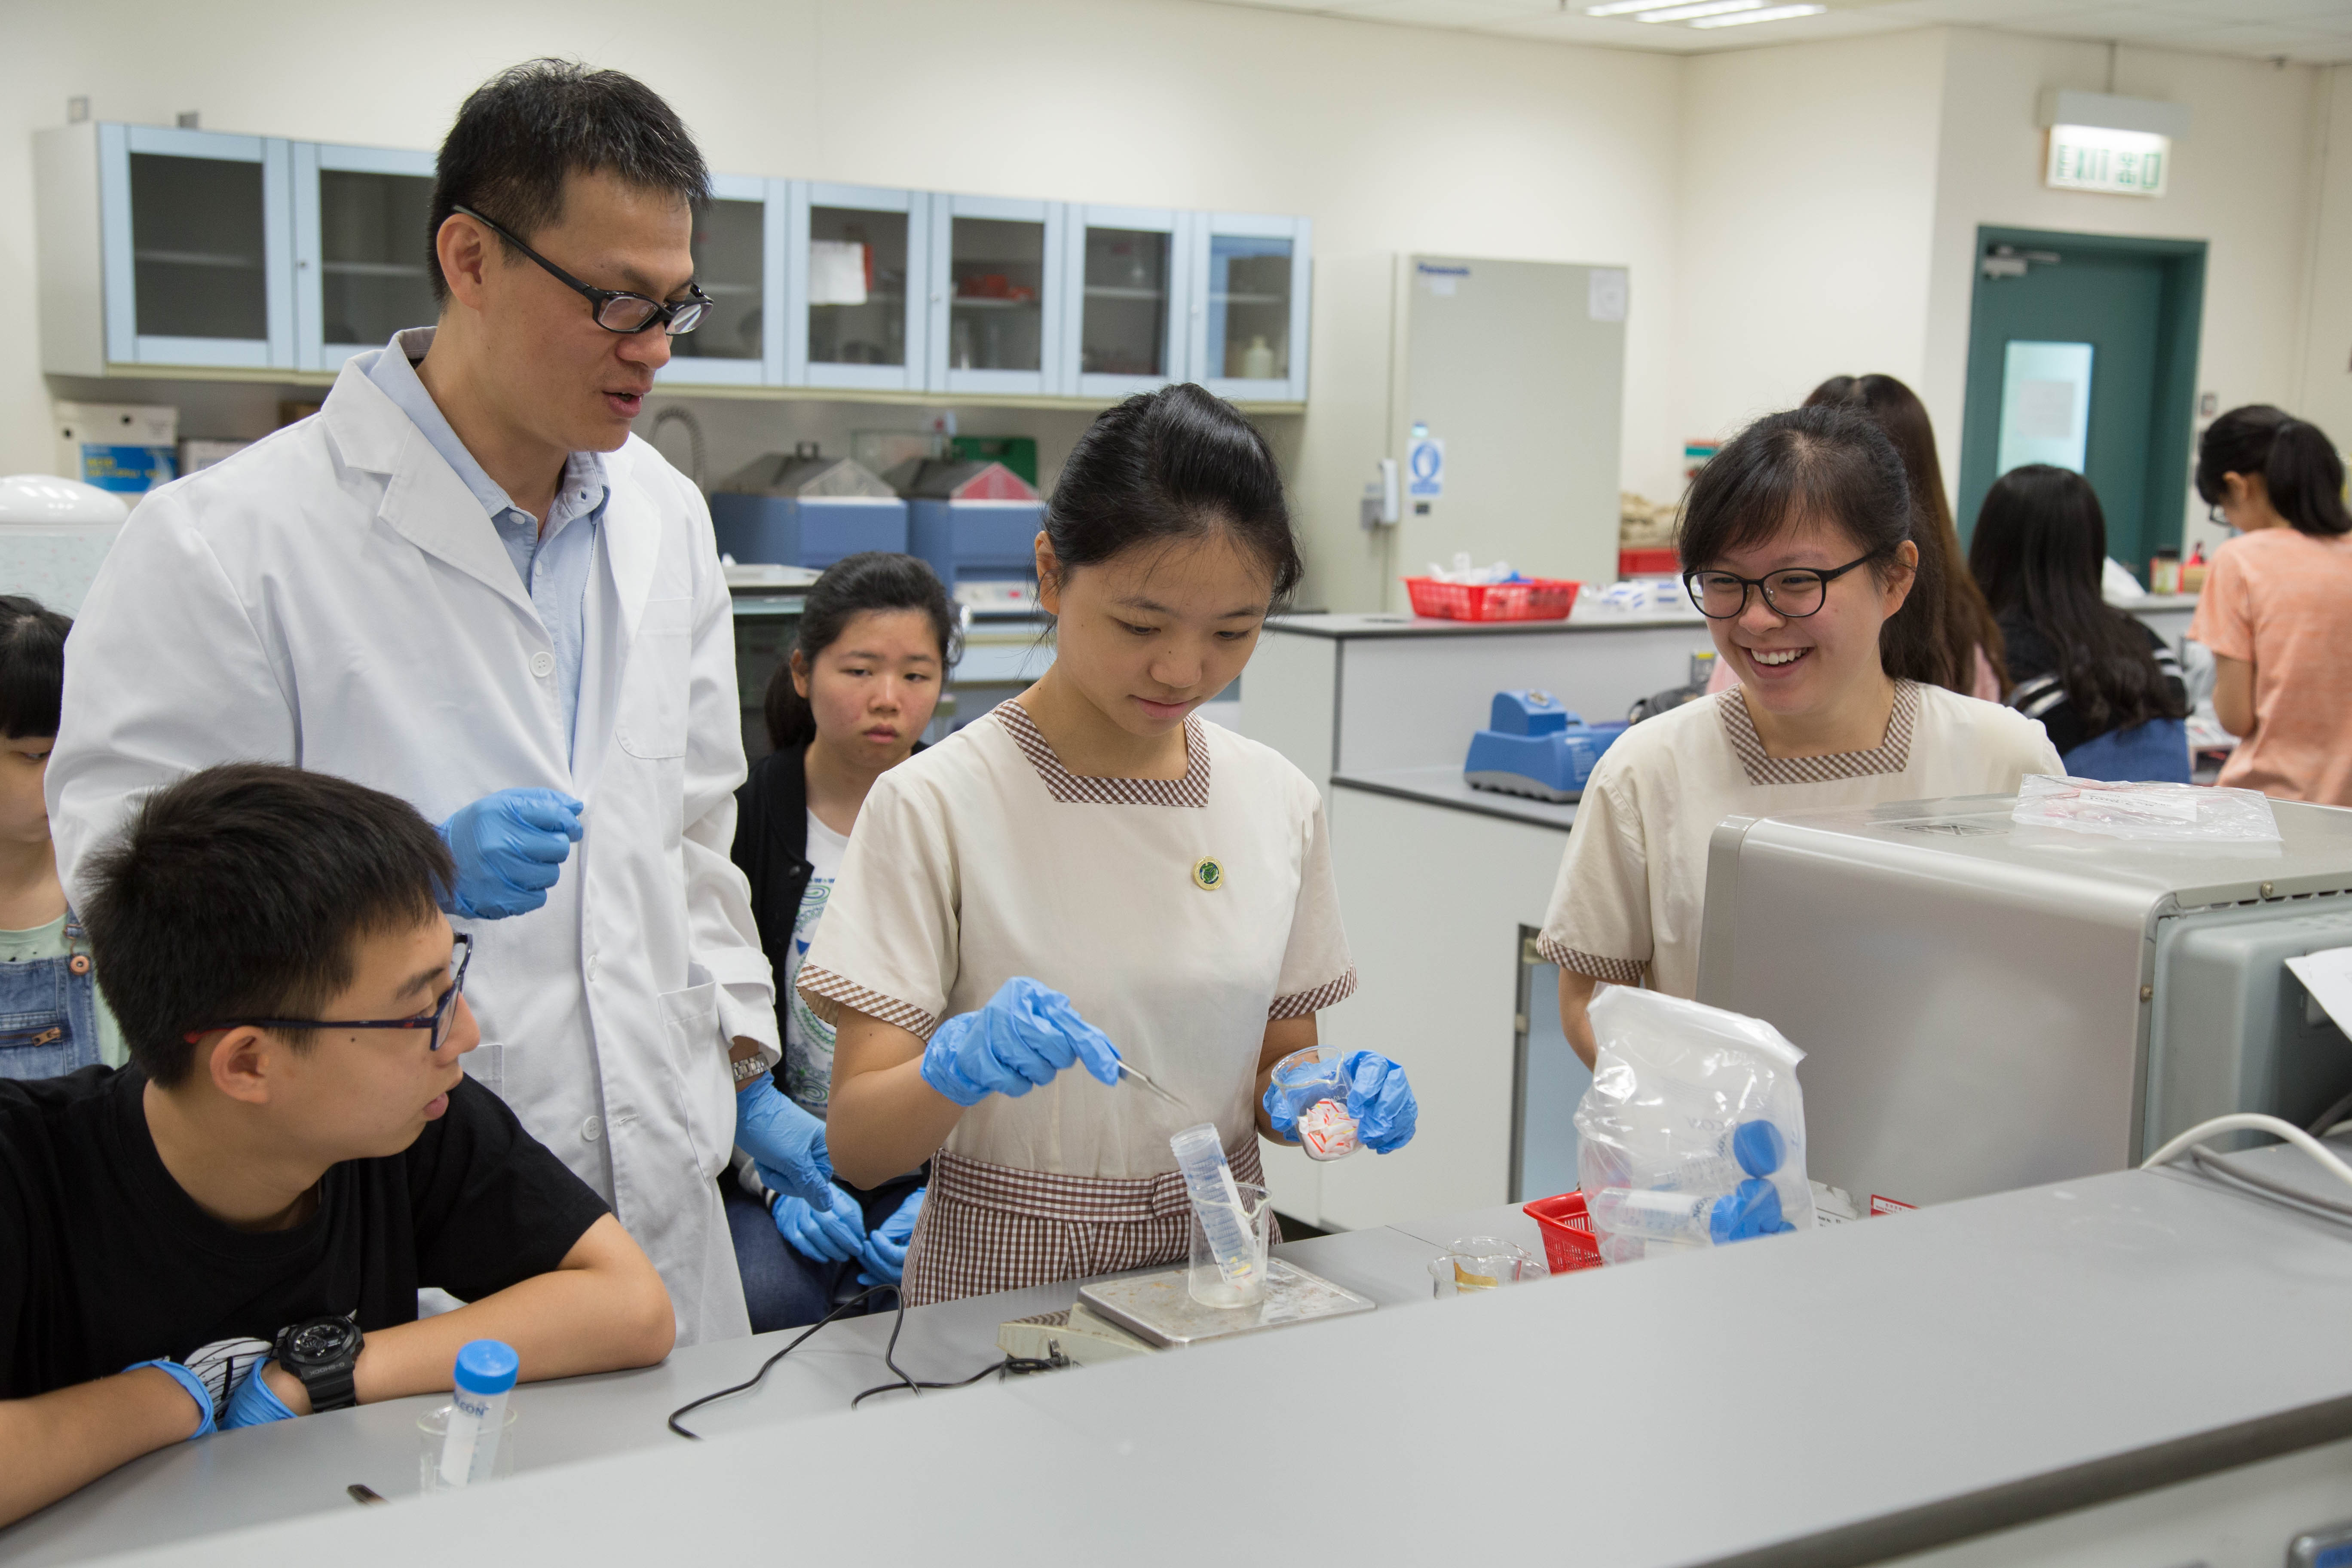 同学有机会走进实验室进行塑化剂检测，丰富学习经历。